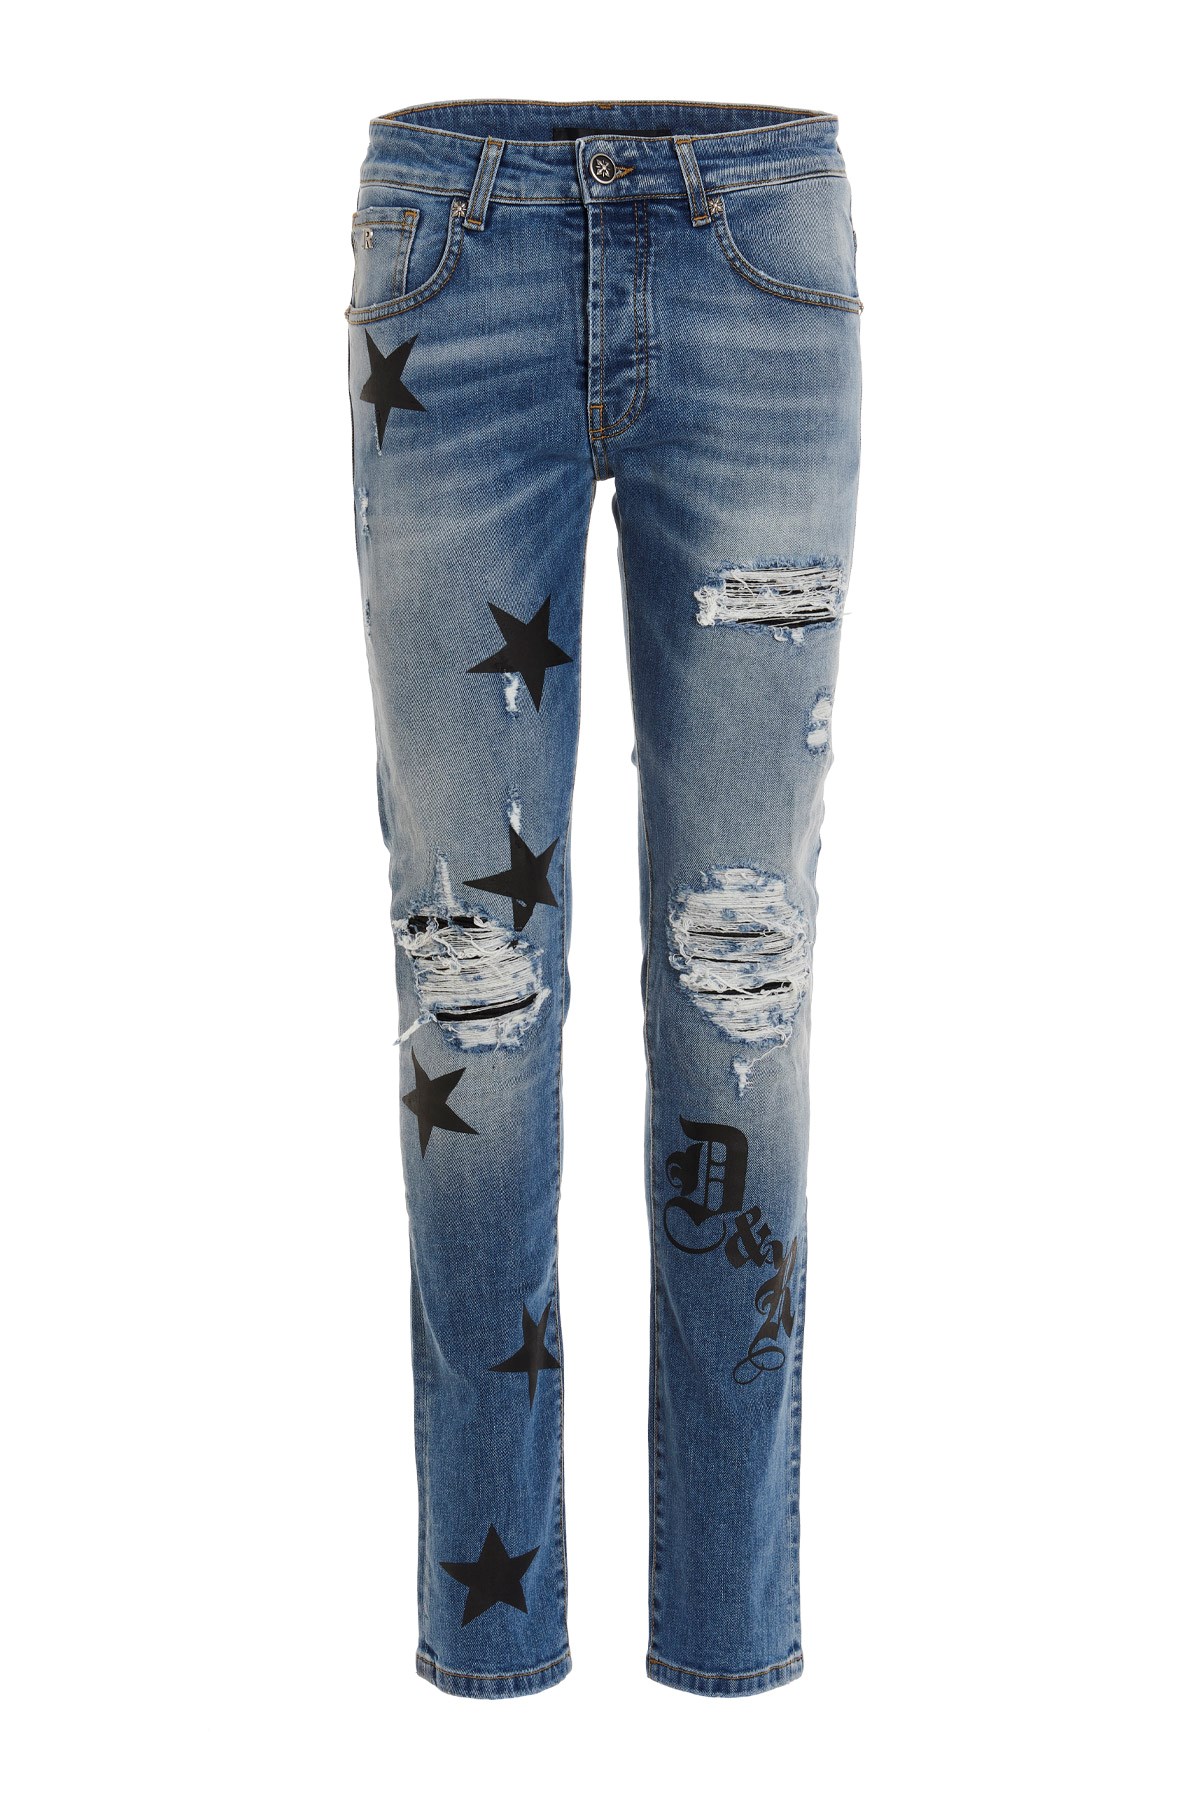 RICHMOND Jeans 'Viskit' Von Richmond Aus Der Dark Polo Gang Capsule-Ko